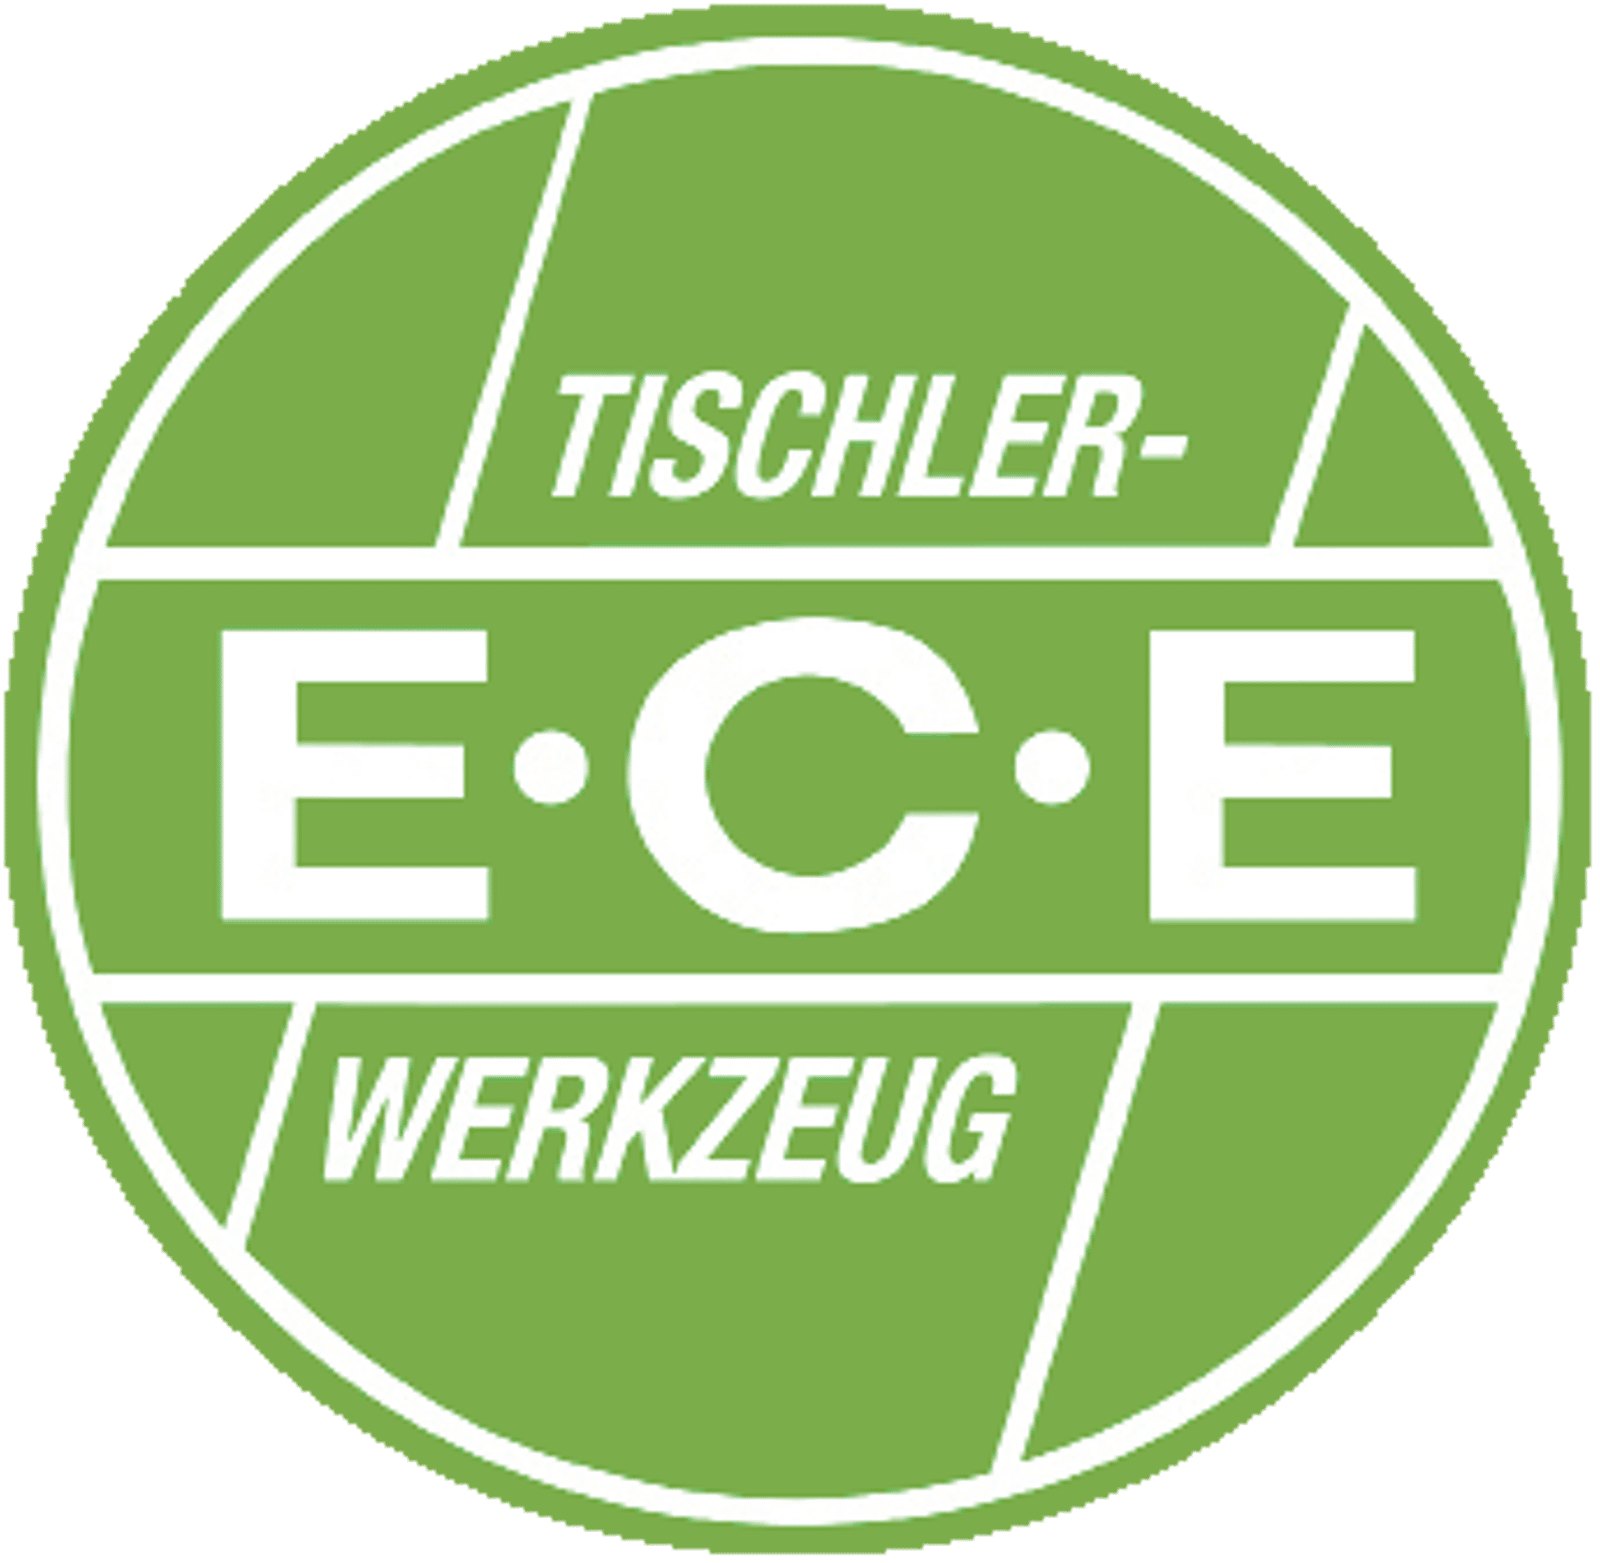 E.C.E. Tischlerwinkel online kaufen